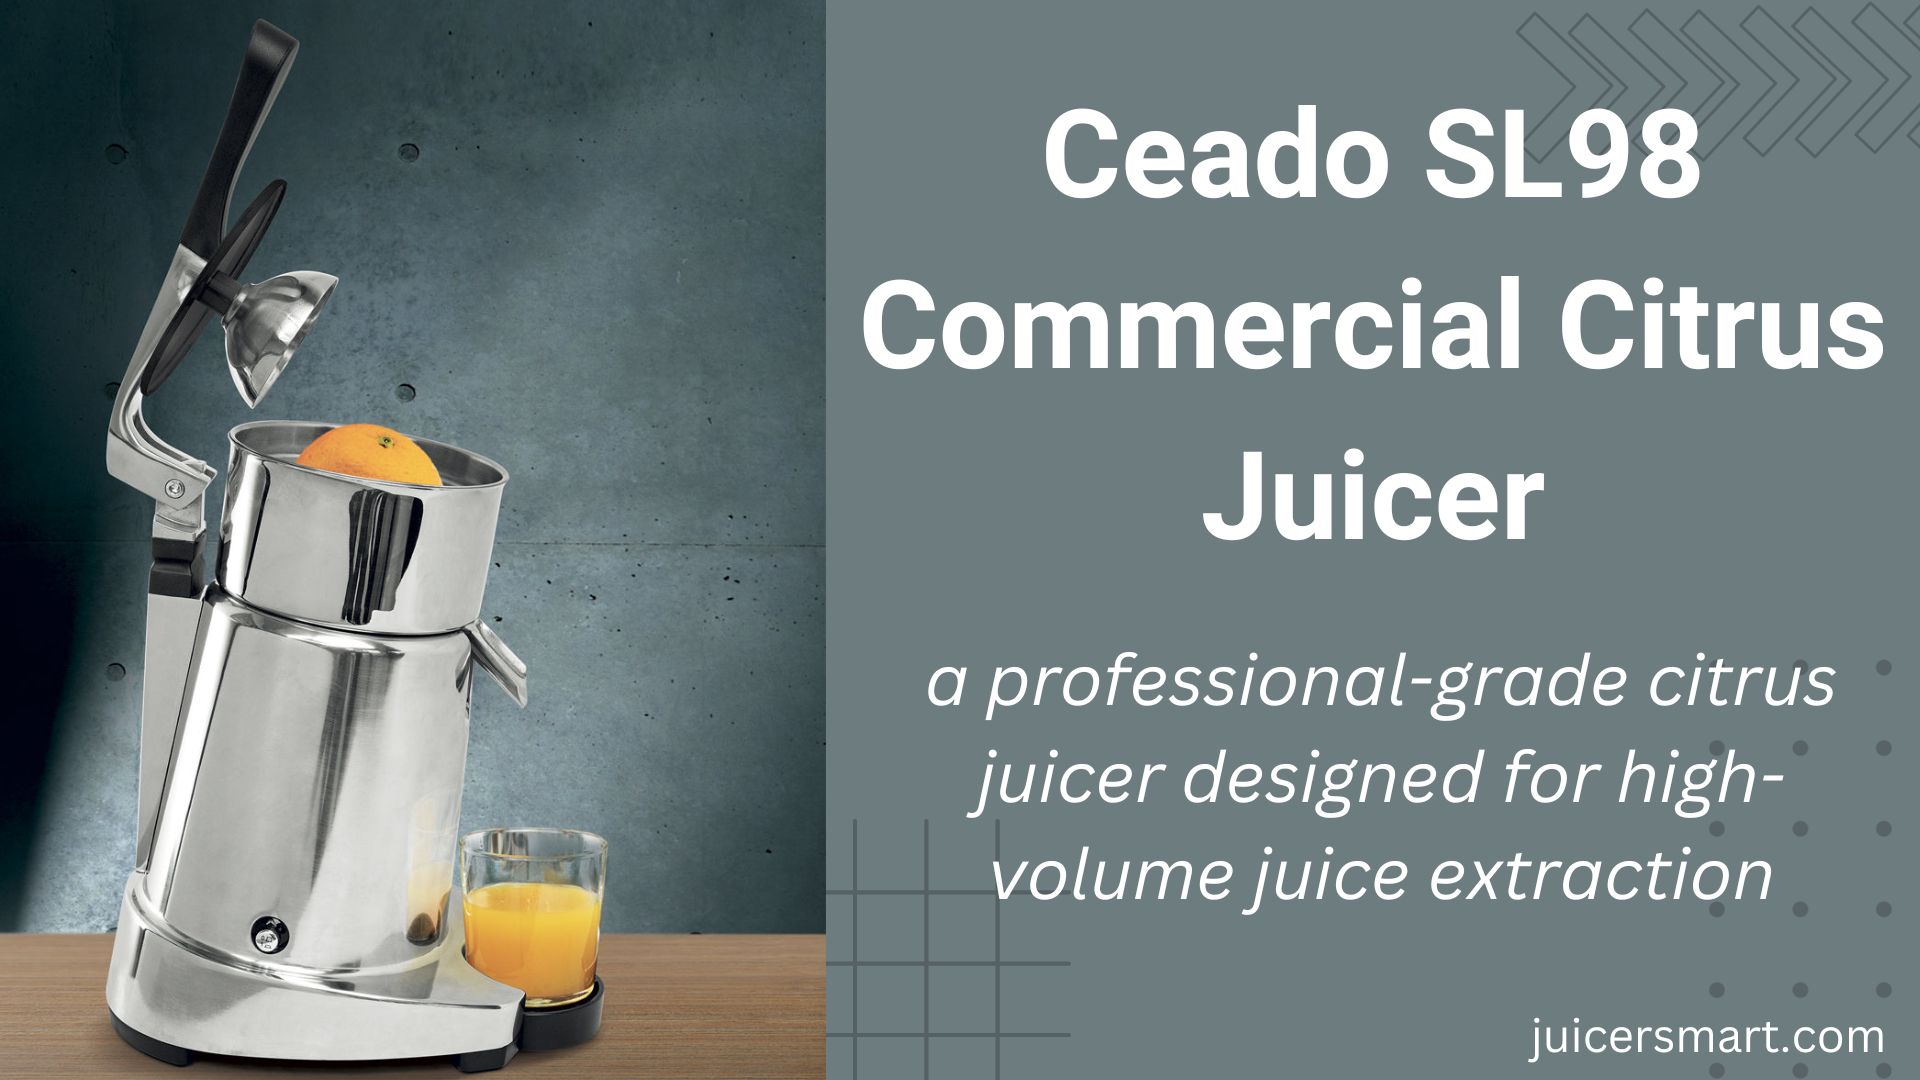 Ceado SL98 Commercial Citrus Juicer